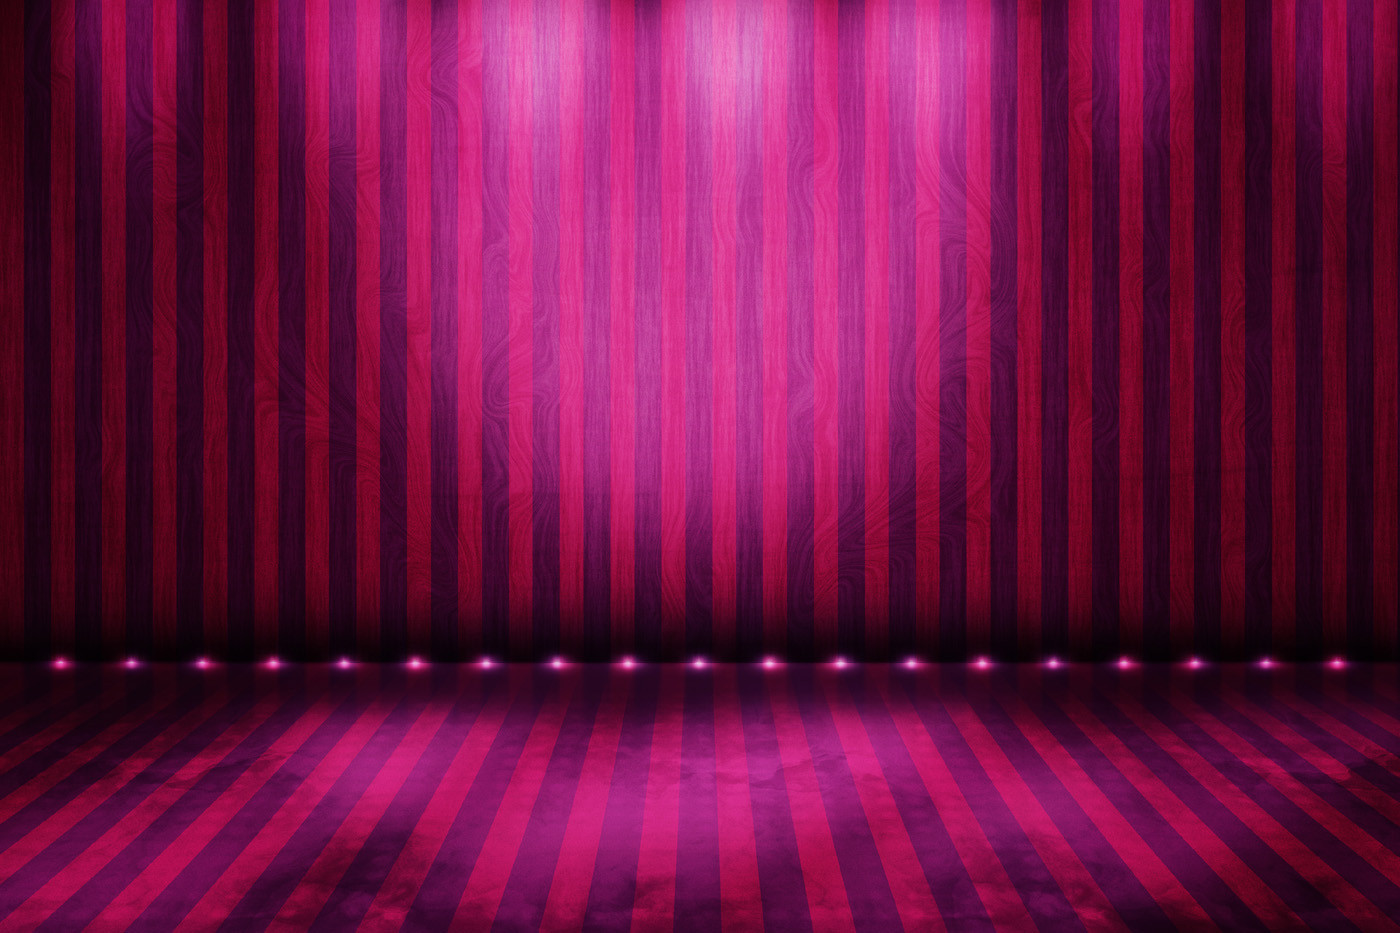 Ảnh nền sân khấu kích thước 1400x933 màu hồng miễn phí để tải về và sử dụng cho các buổi biểu diễn của bạn. Với kích thước lớn và màu sắc đẹp mắt, đây là lựa chọn tốt nhất để làm nổi bật các nội dung trên sân khấu.